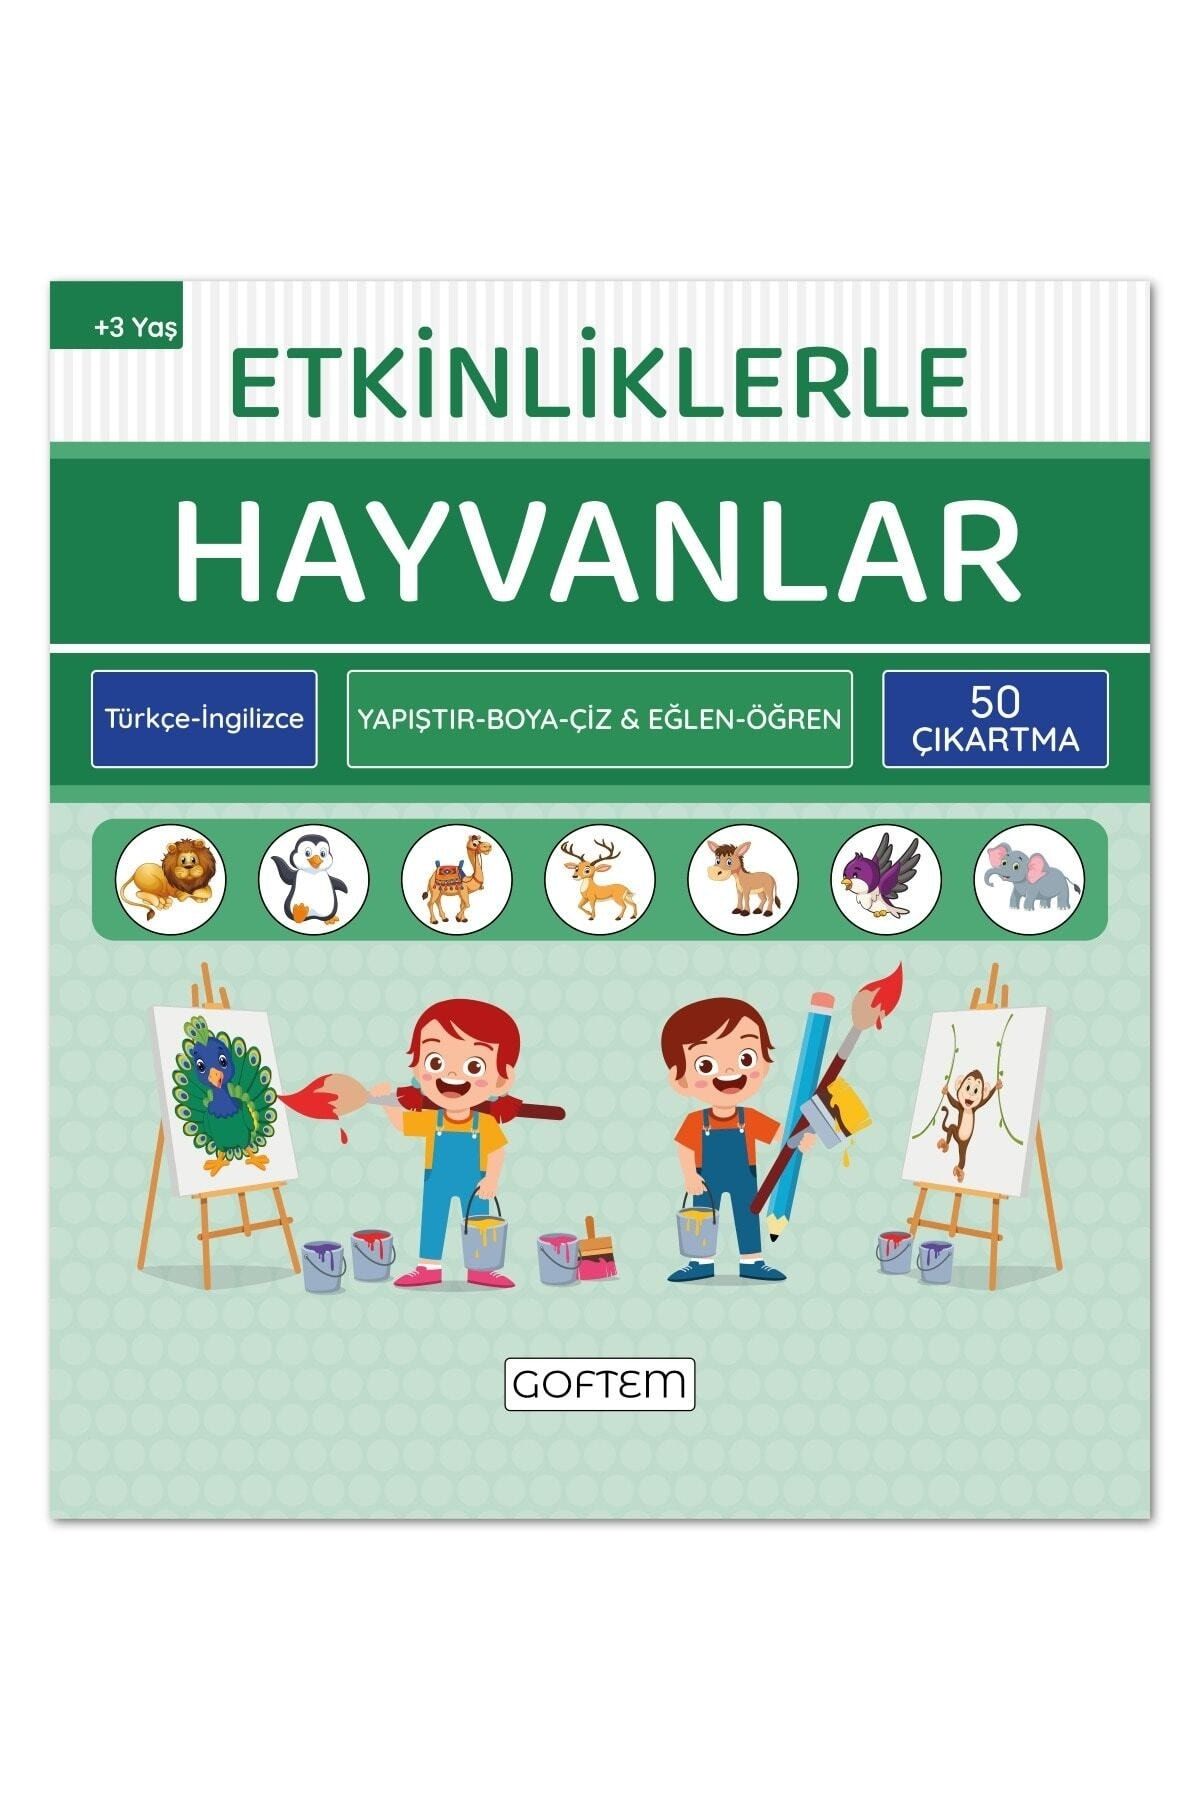 Etkinliklerle Hayvanlar - Türkçe Ingilizce - 50 Çıkartma - 24 Sayfa Eğitici Aktivite Kitabı